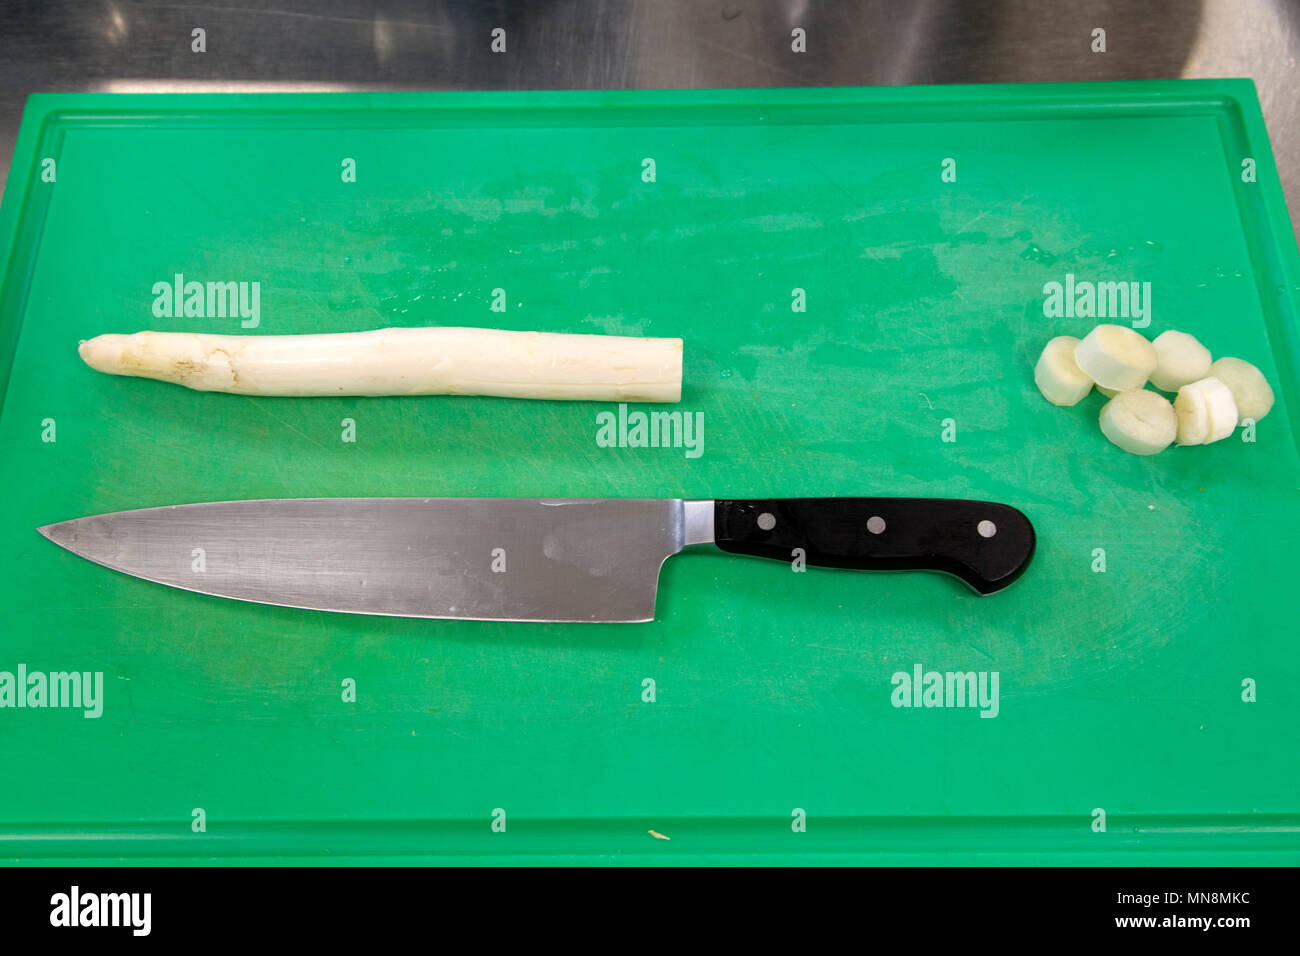 Asparagi bianchi su di un tagliere in cucina. Un coltello è anche sul tagliere. Foto Stock